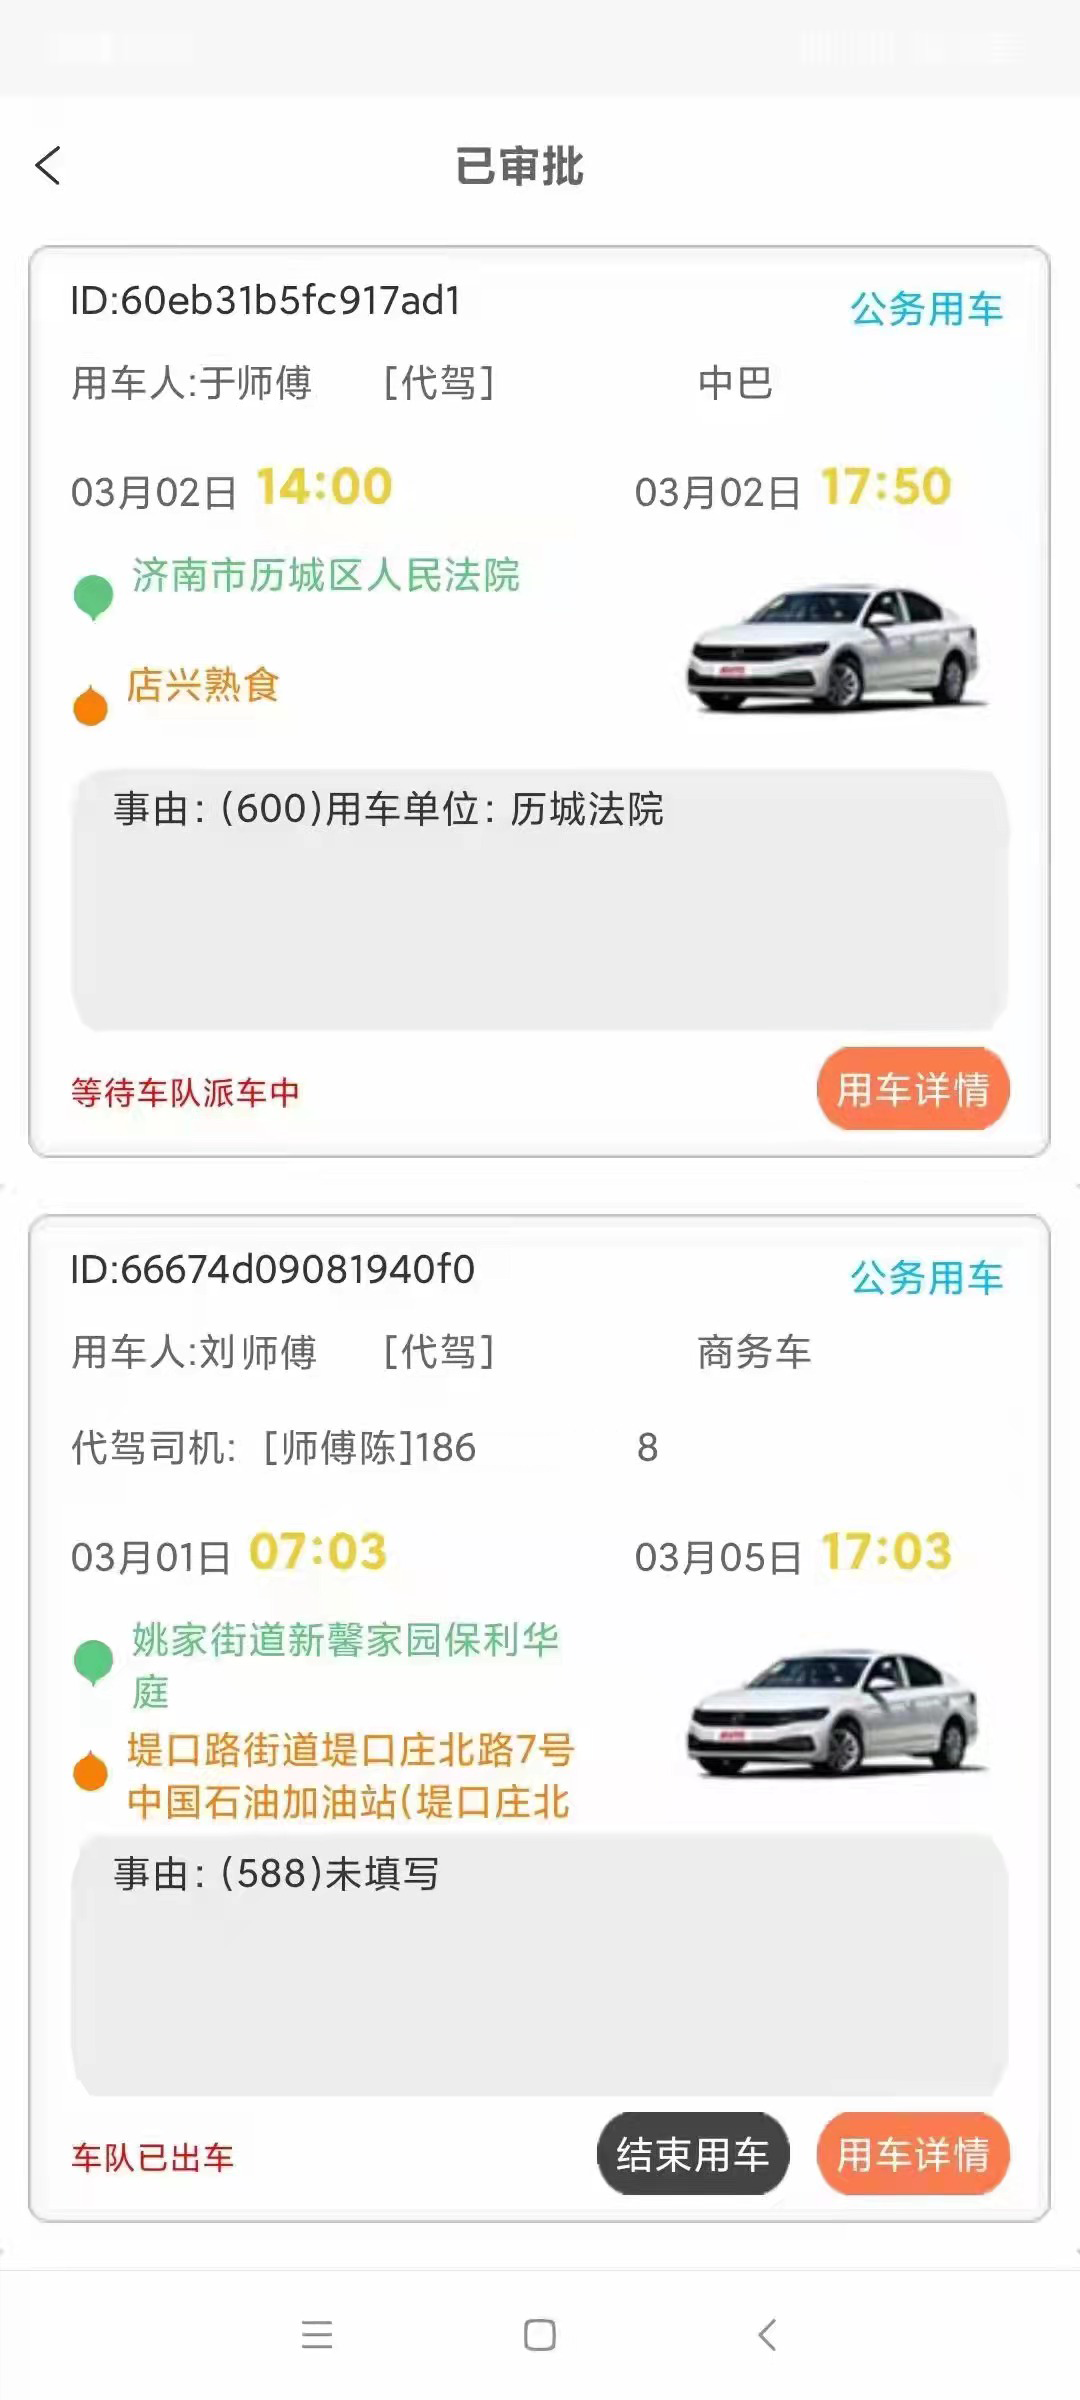 熊猫基地汉中市佛坪县文锋科技一键打出租车APP